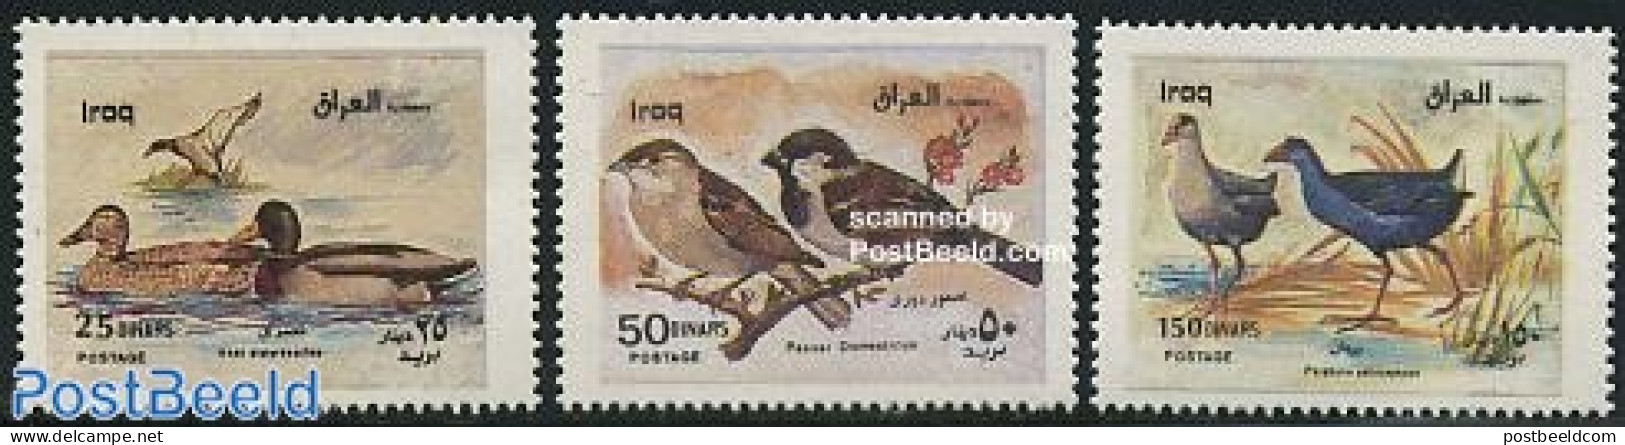 Iraq 2000 Birds 3v, Mint NH, Nature - Birds - Ducks - Iraq